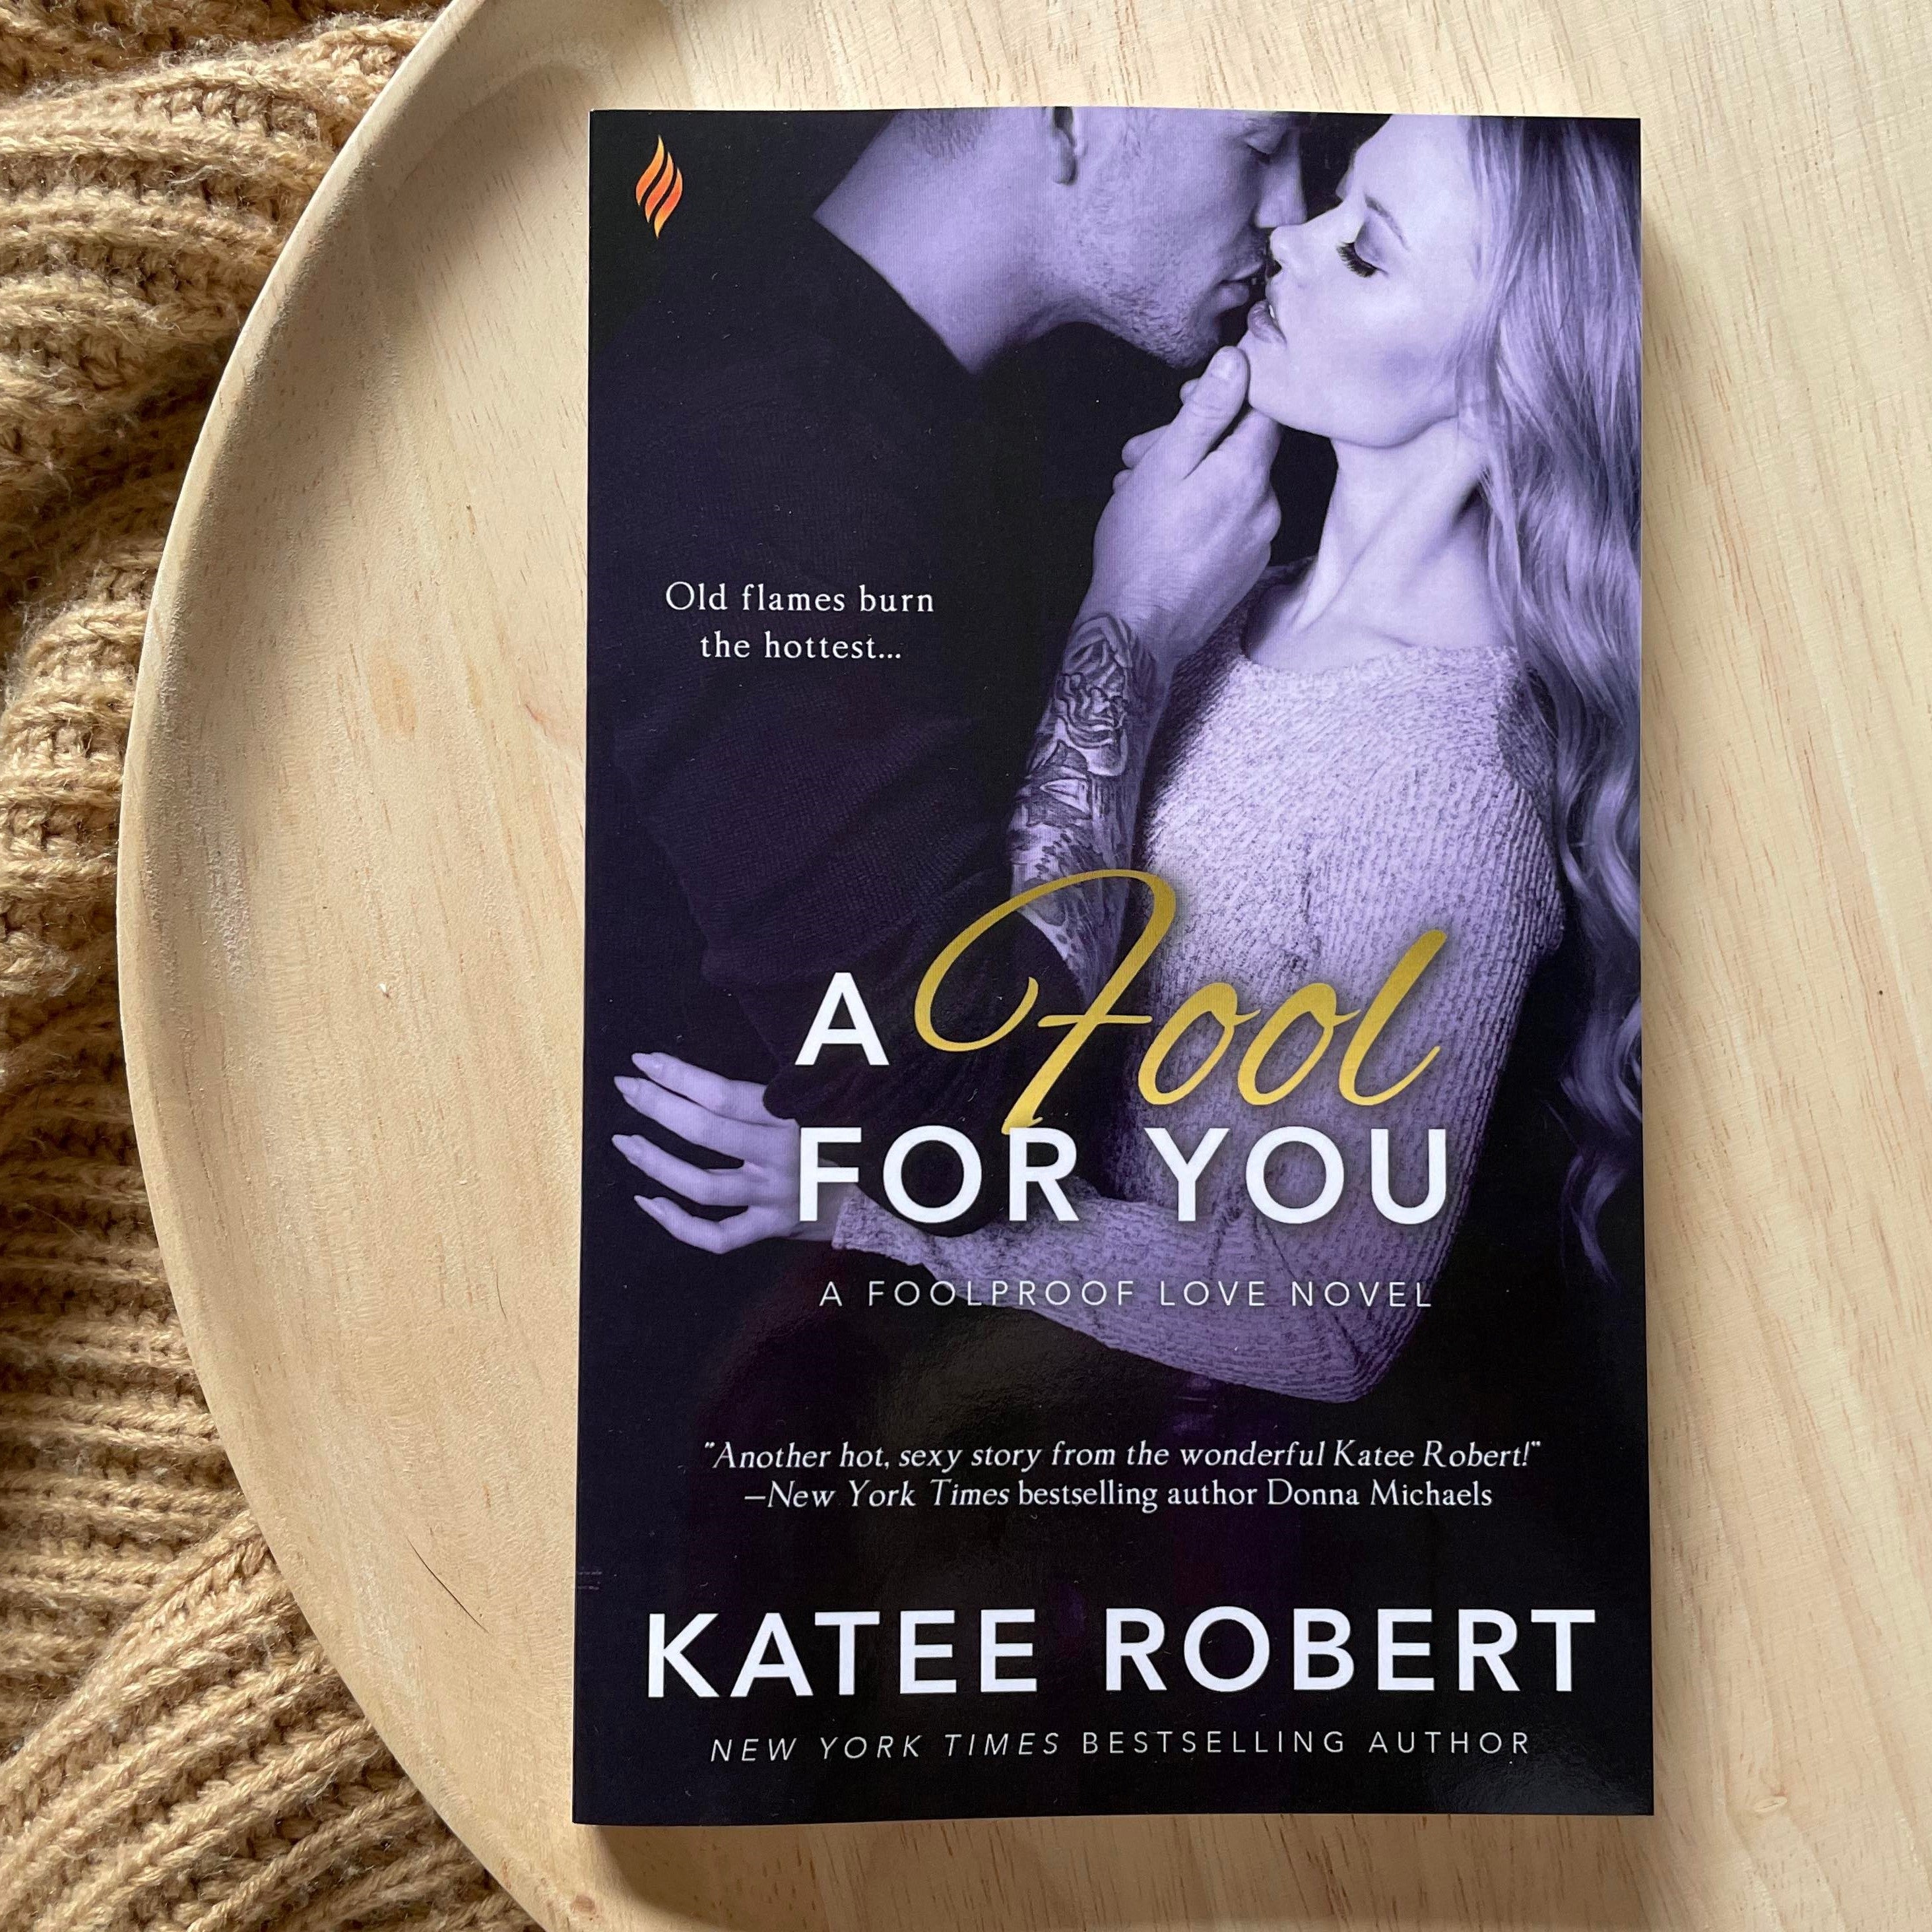 Foolproof Love series by Katee Robert